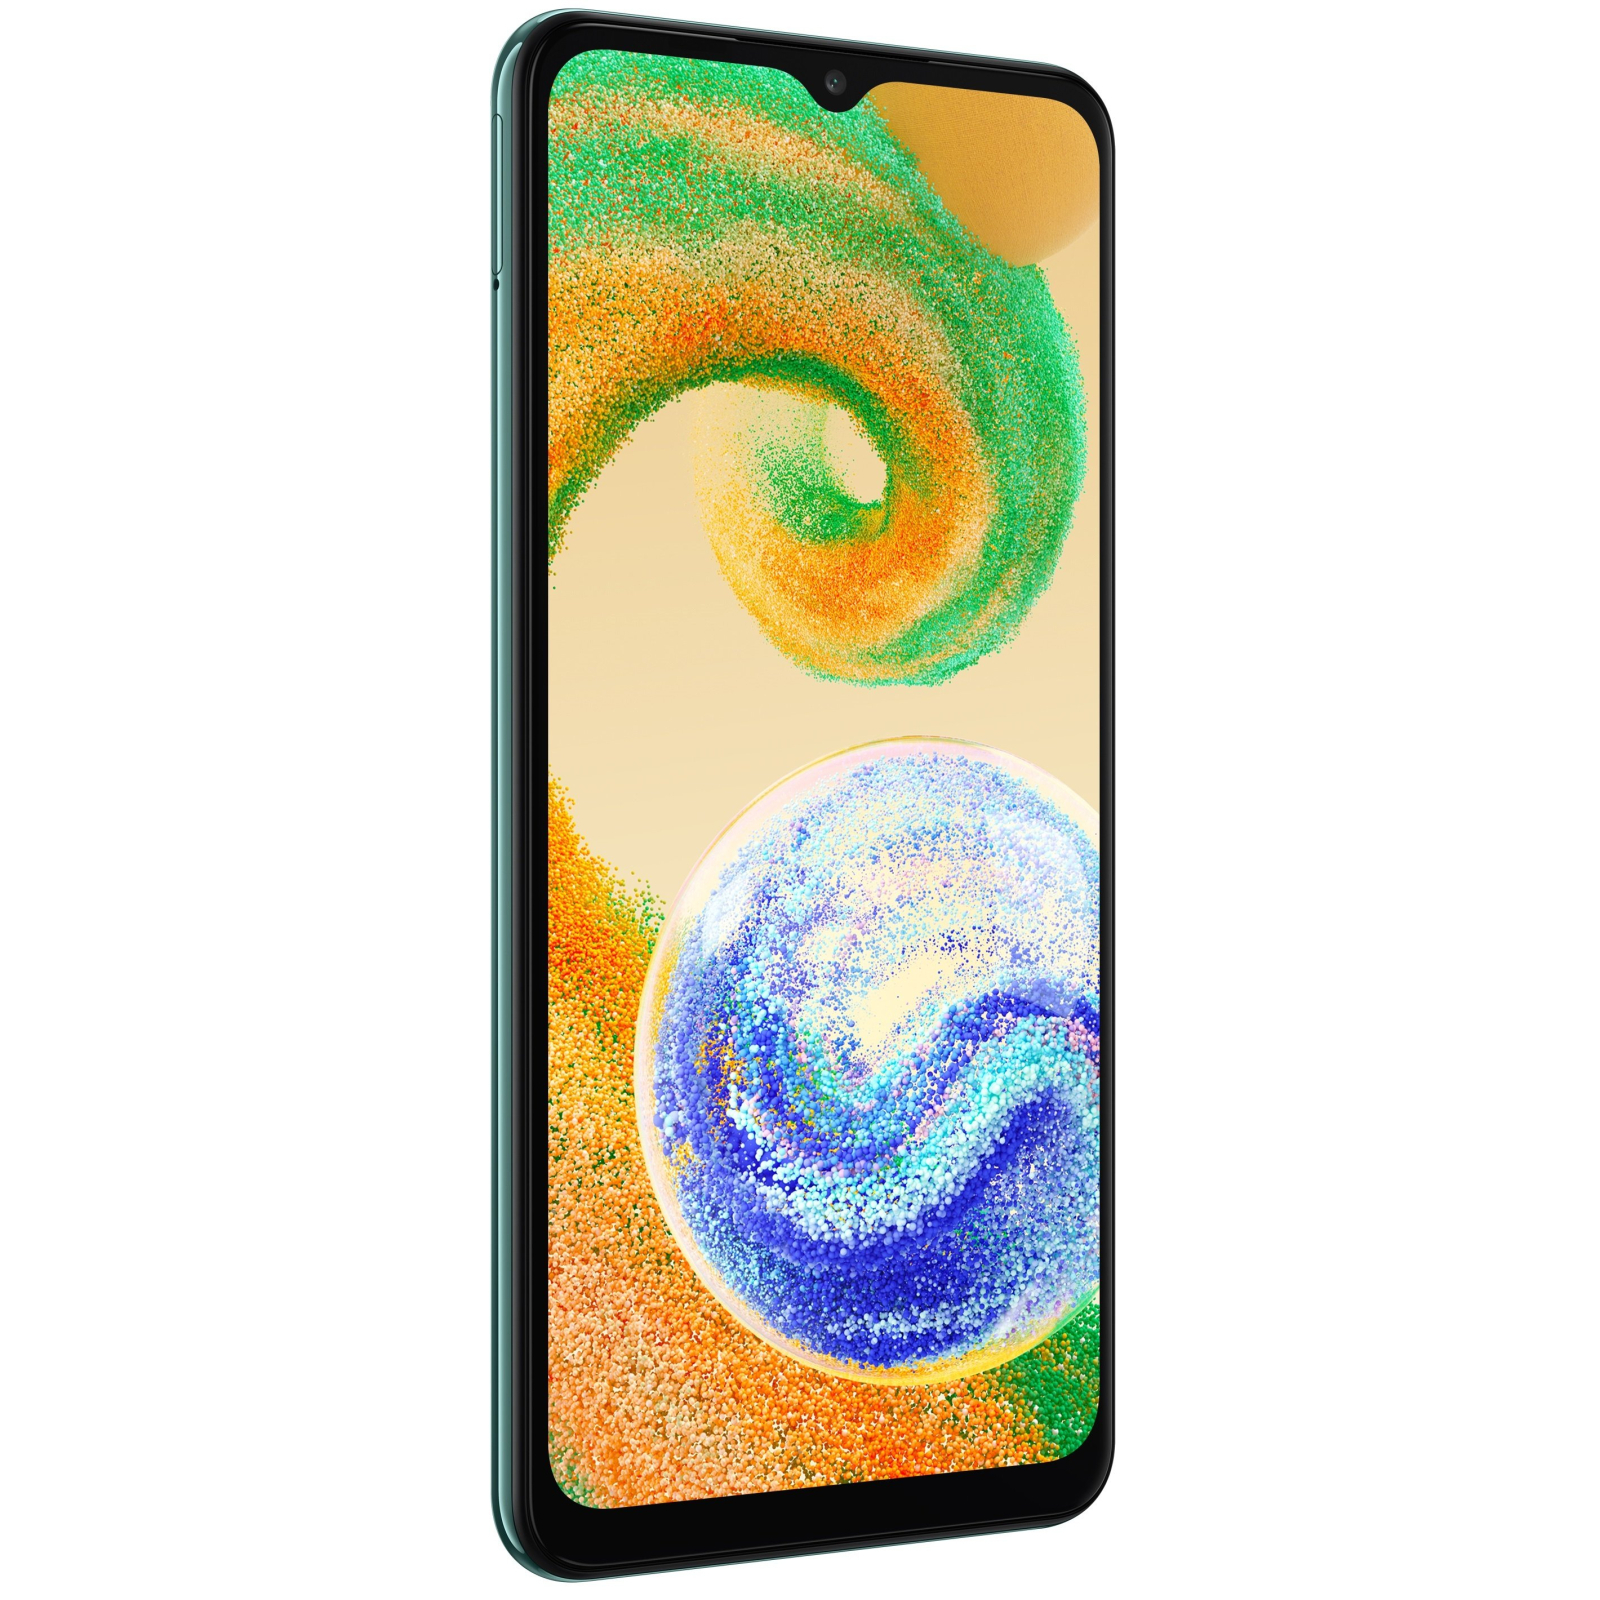 Мобільний телефон Samsung Galaxy A04s 4/64Gb Copper (SM-A047FZCVSEK) зображення 5